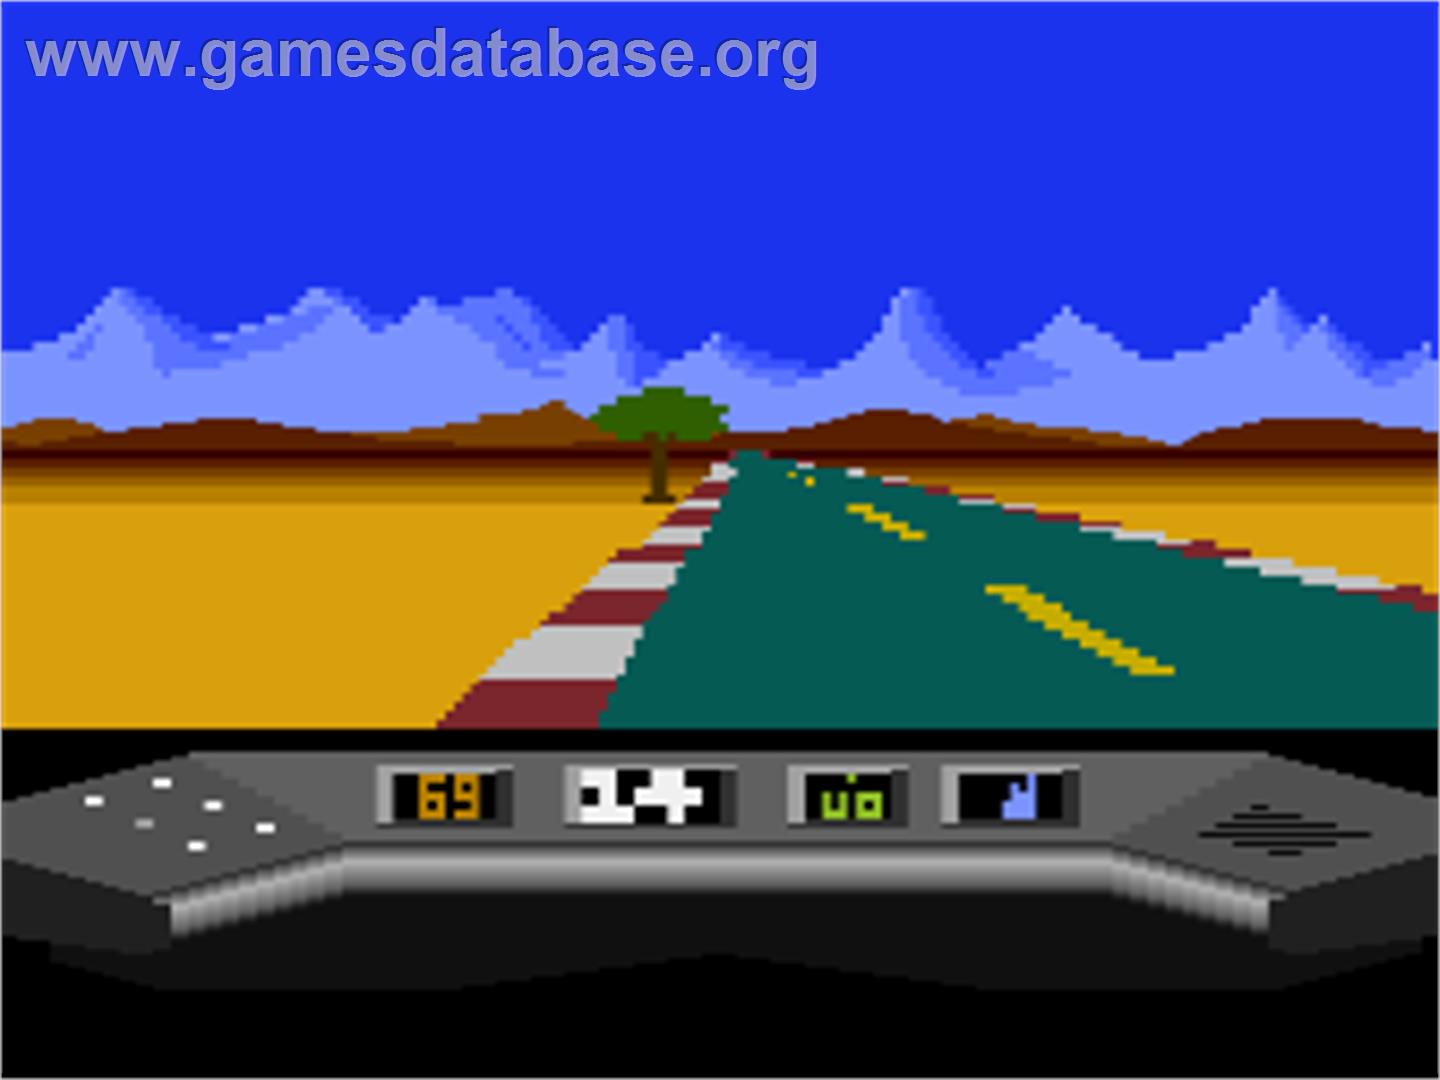 Elektraglide - Atari 8-bit - Artwork - In Game